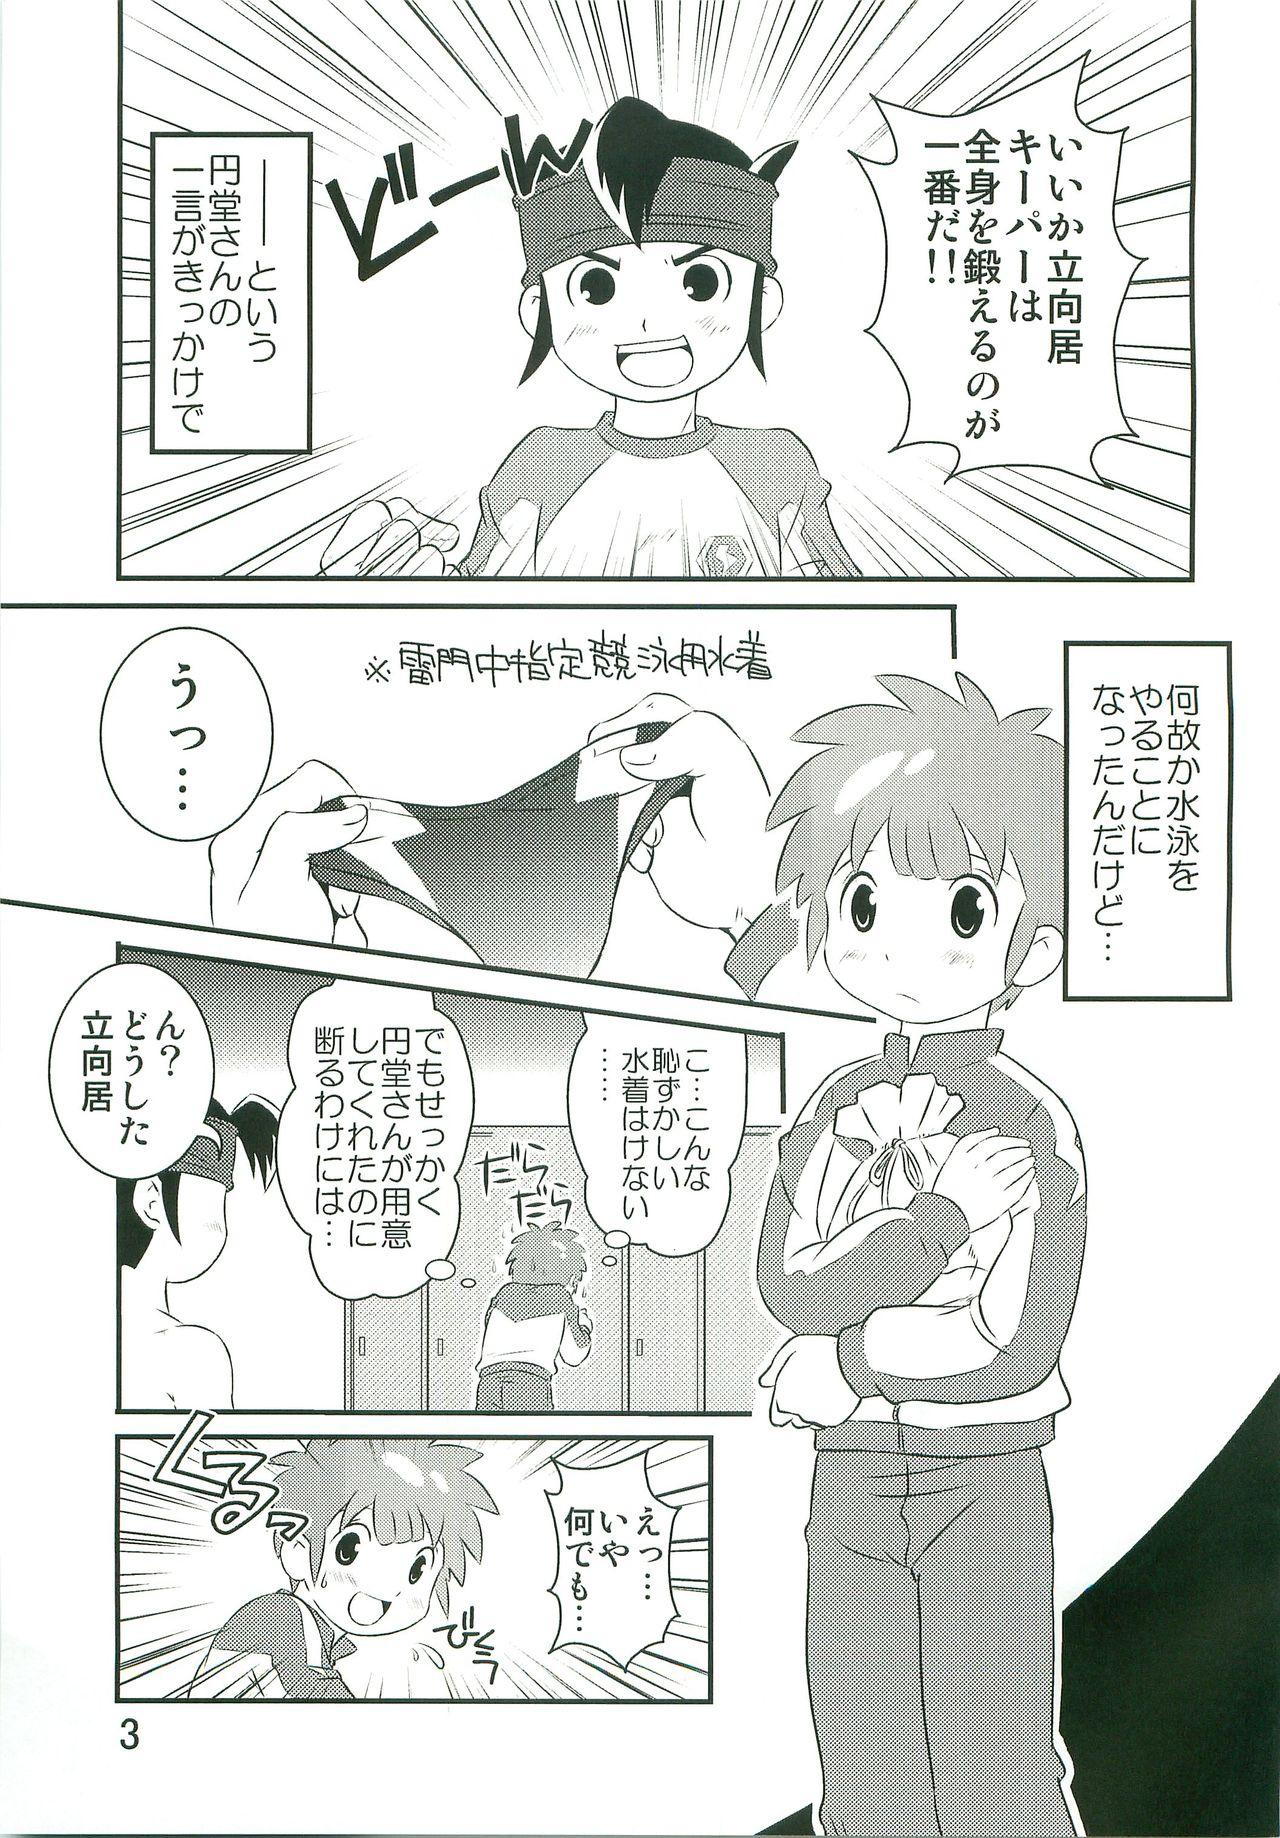 Wet Tokkun nau! - Inazuma eleven Comedor - Page 2